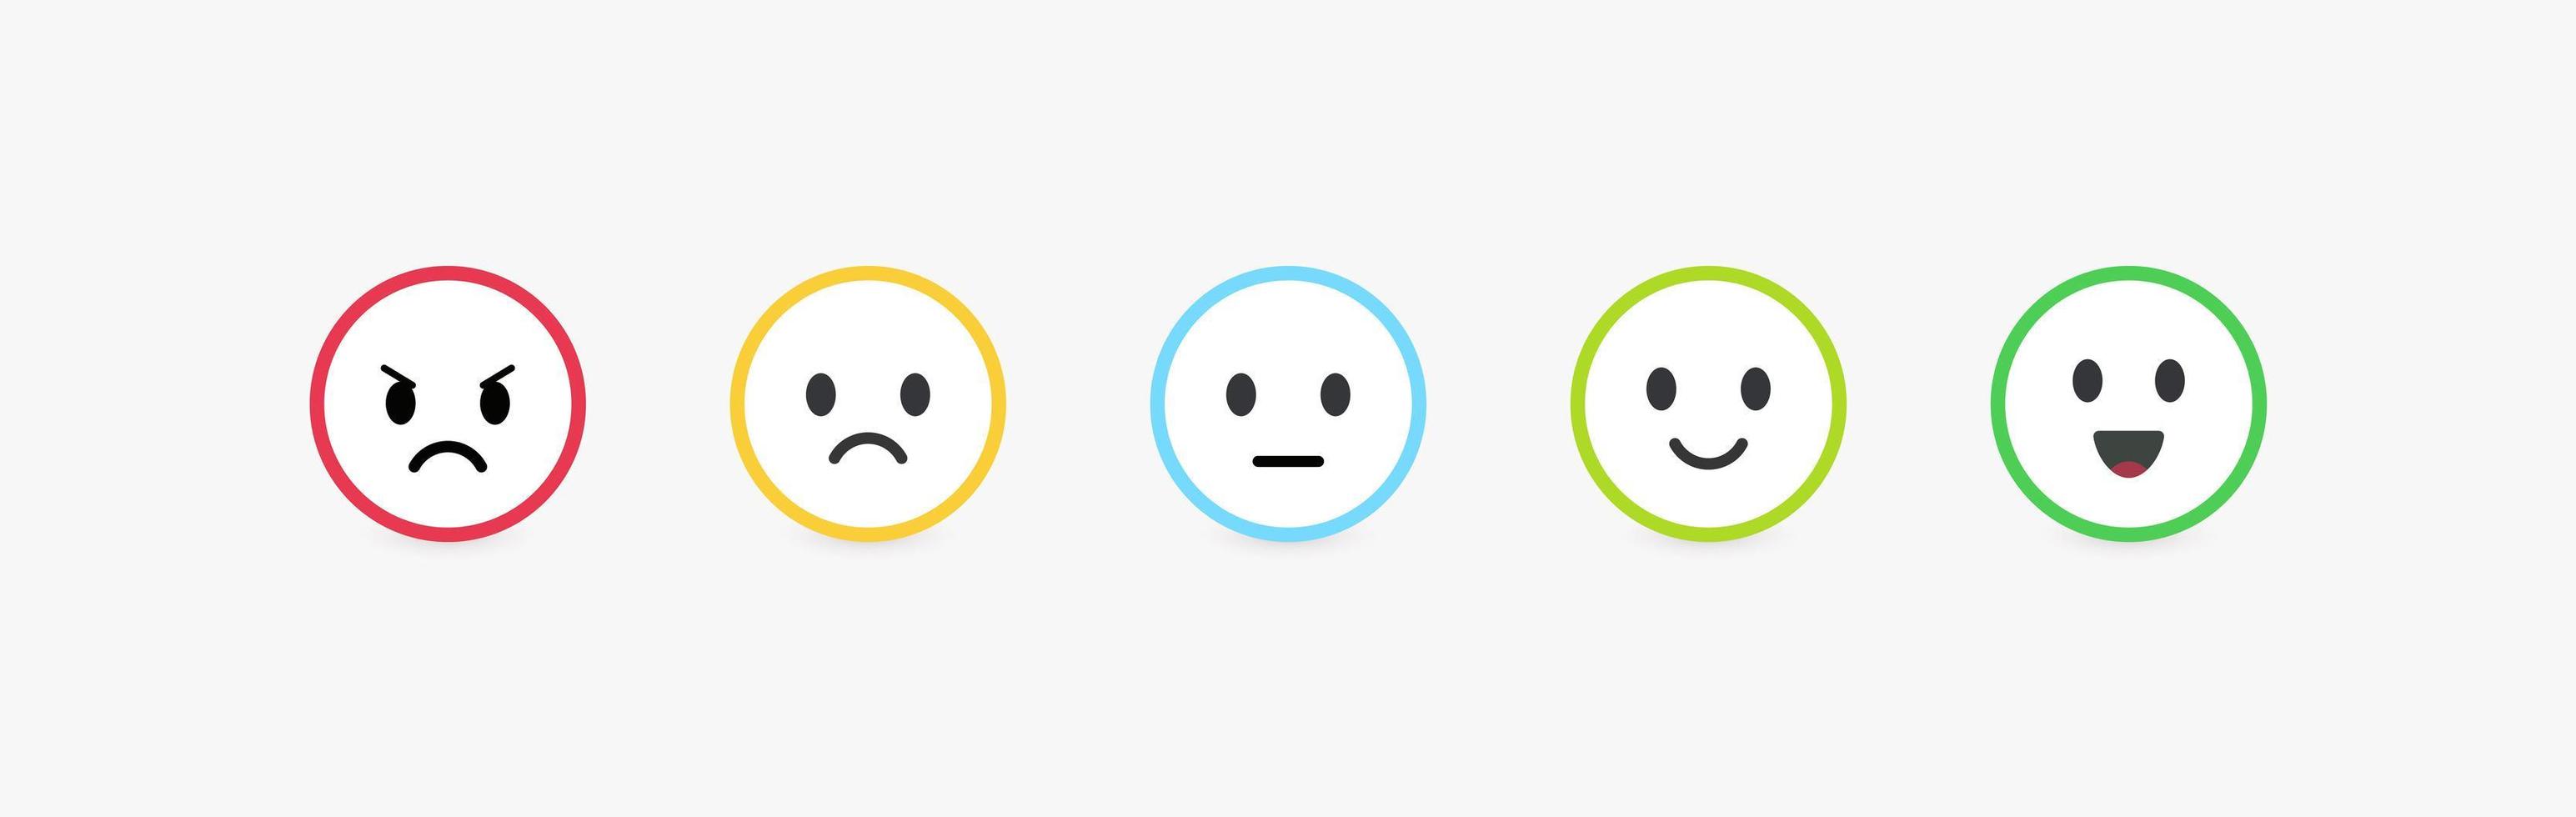 set van vector emoticons met verschillende emoties. feedbackschaal, klantbeoordeling en beoordeling van de kwaliteit van goederen of diensten. ronde emoji met heldere kleurrijke contour, platte vectorillustratie.